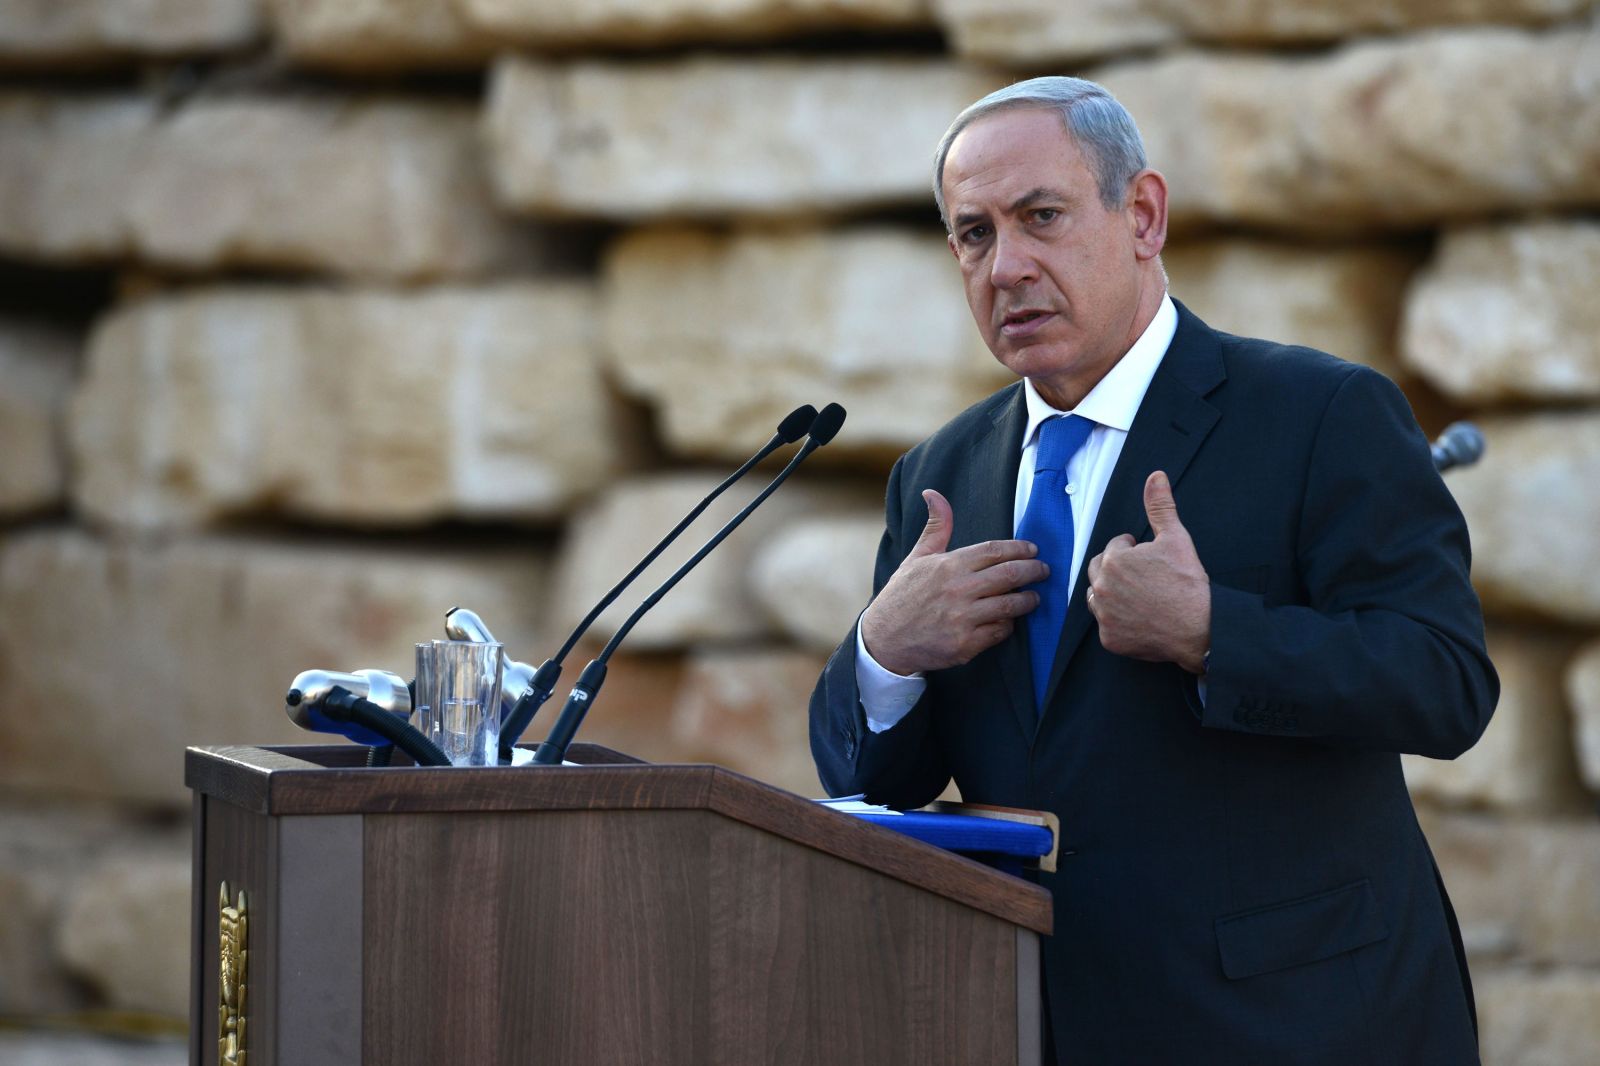   نتنياهو:" إيران وحلفاؤها تشكلان أكبر تهديد على إسرائيل"